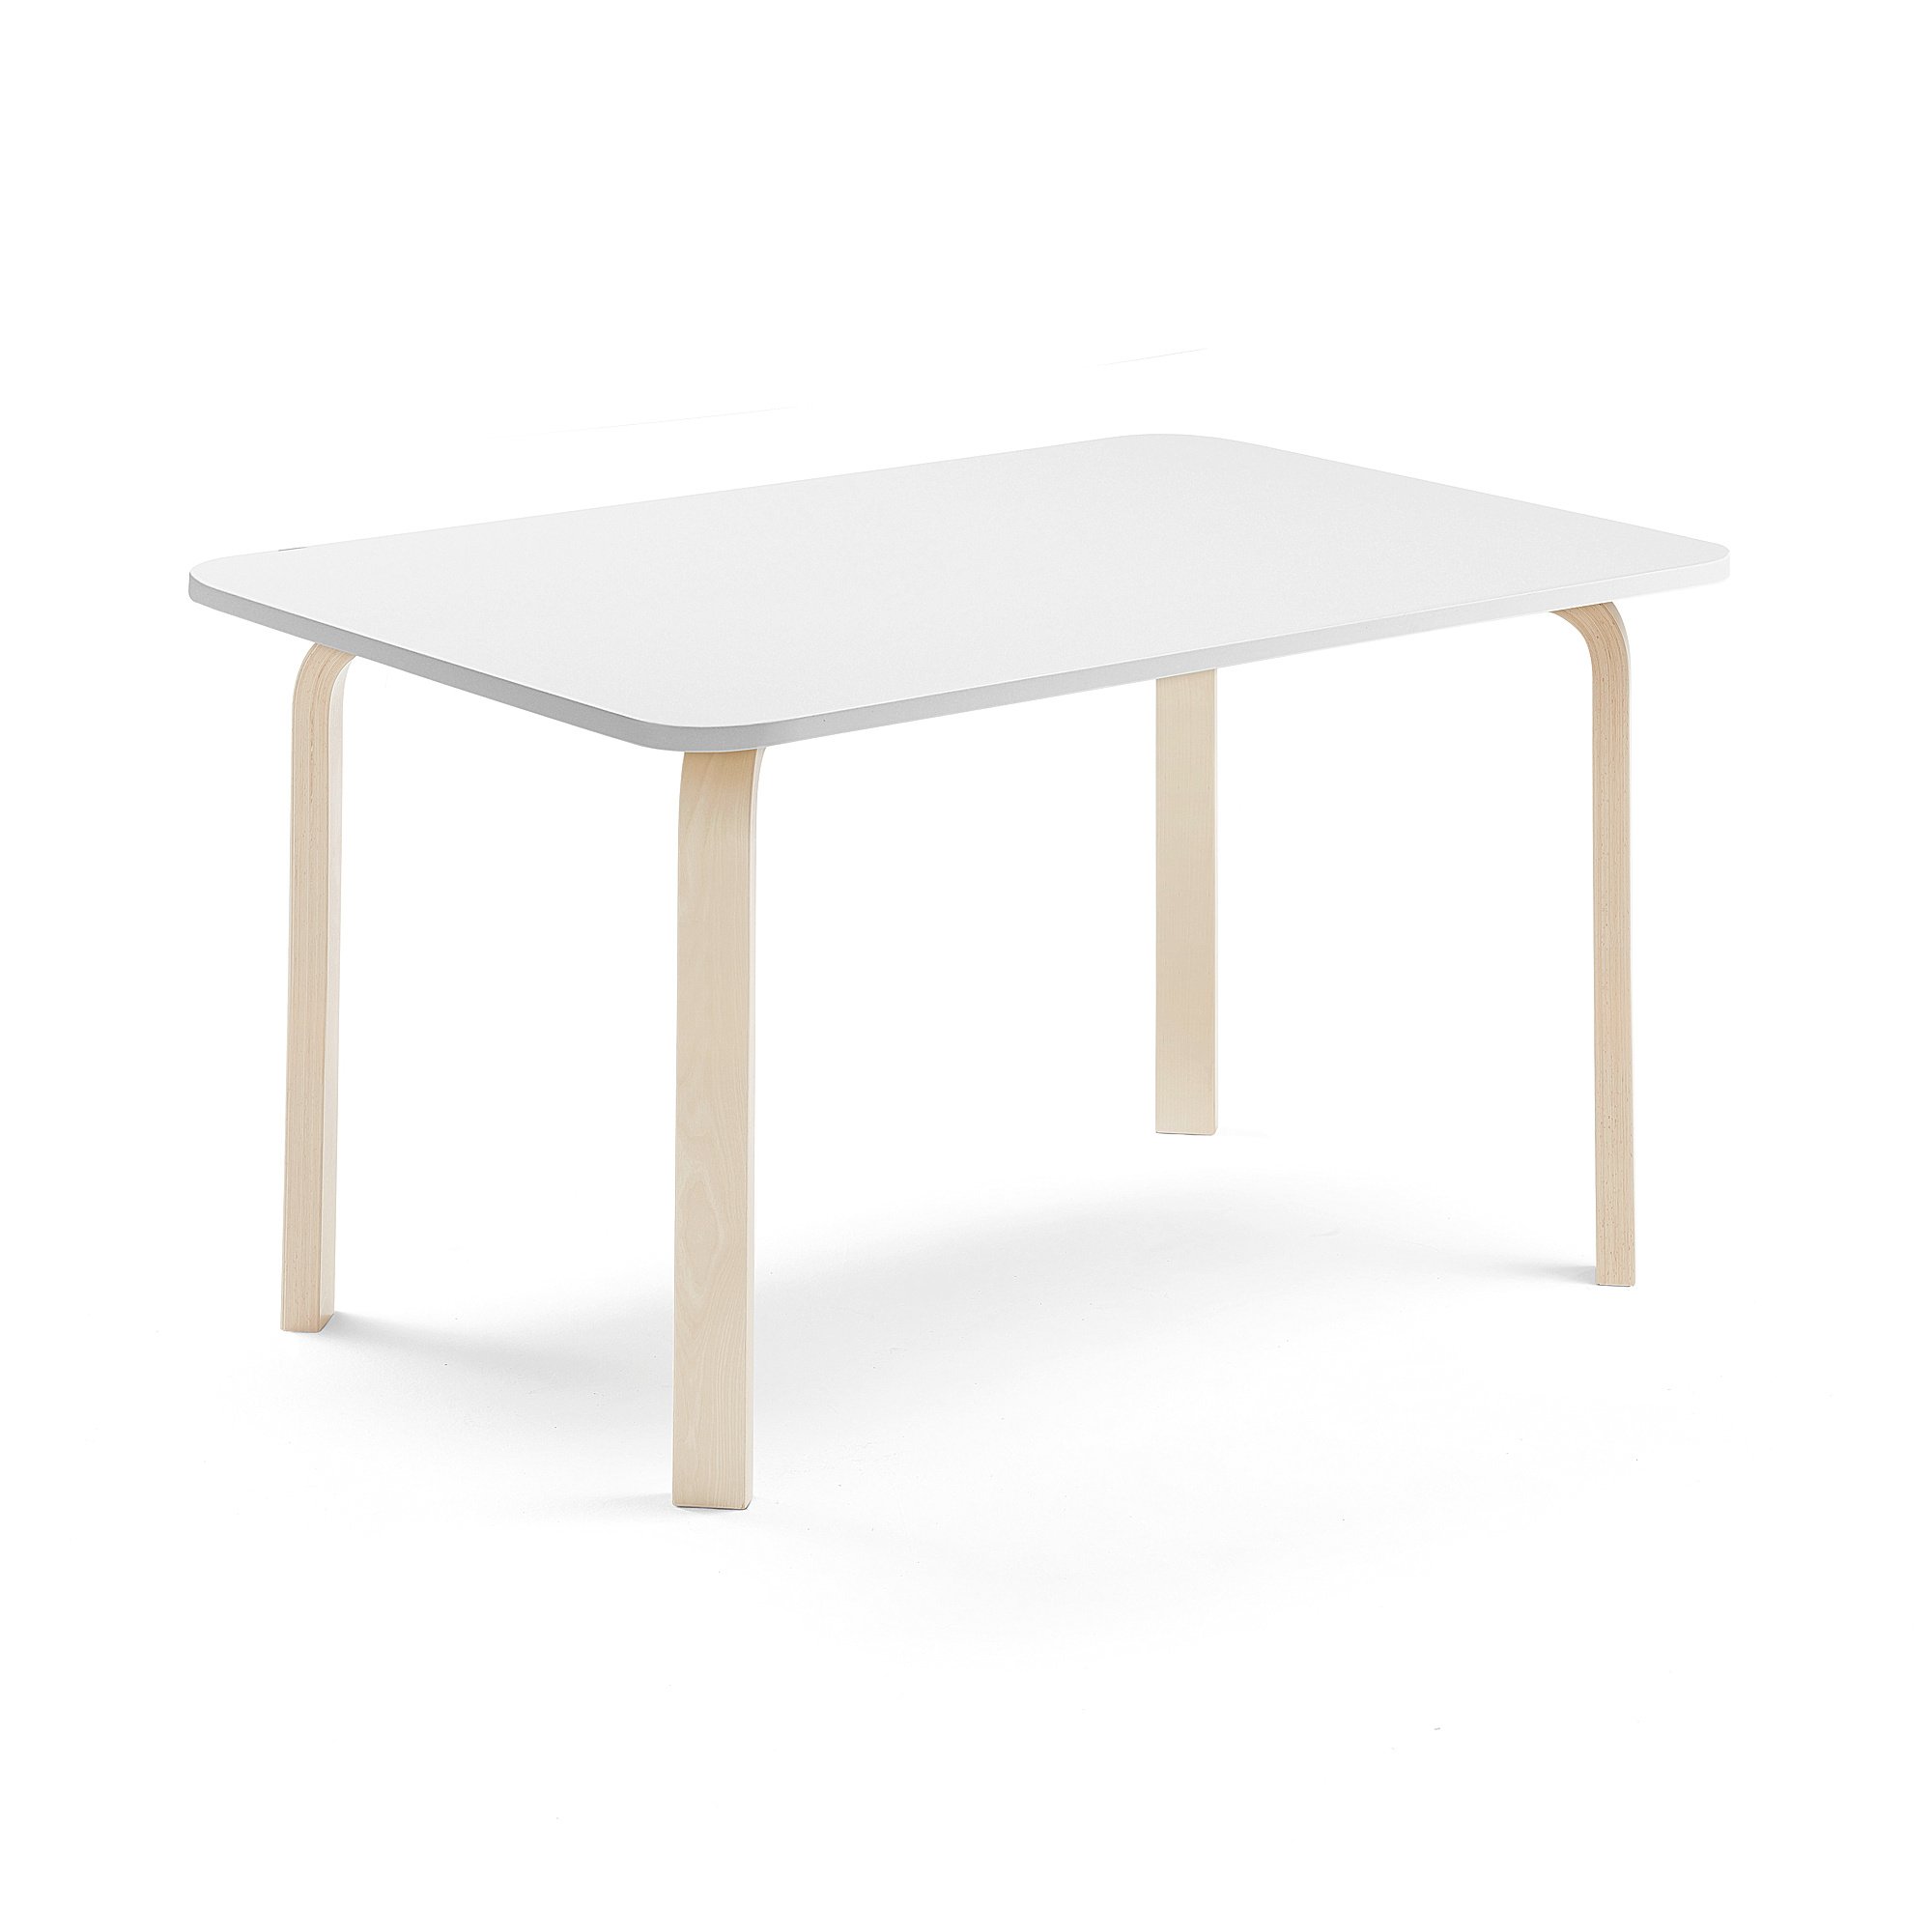 Stůl ELTON, 1200x700x640 mm, bříza, akustická HPL deska, bílá